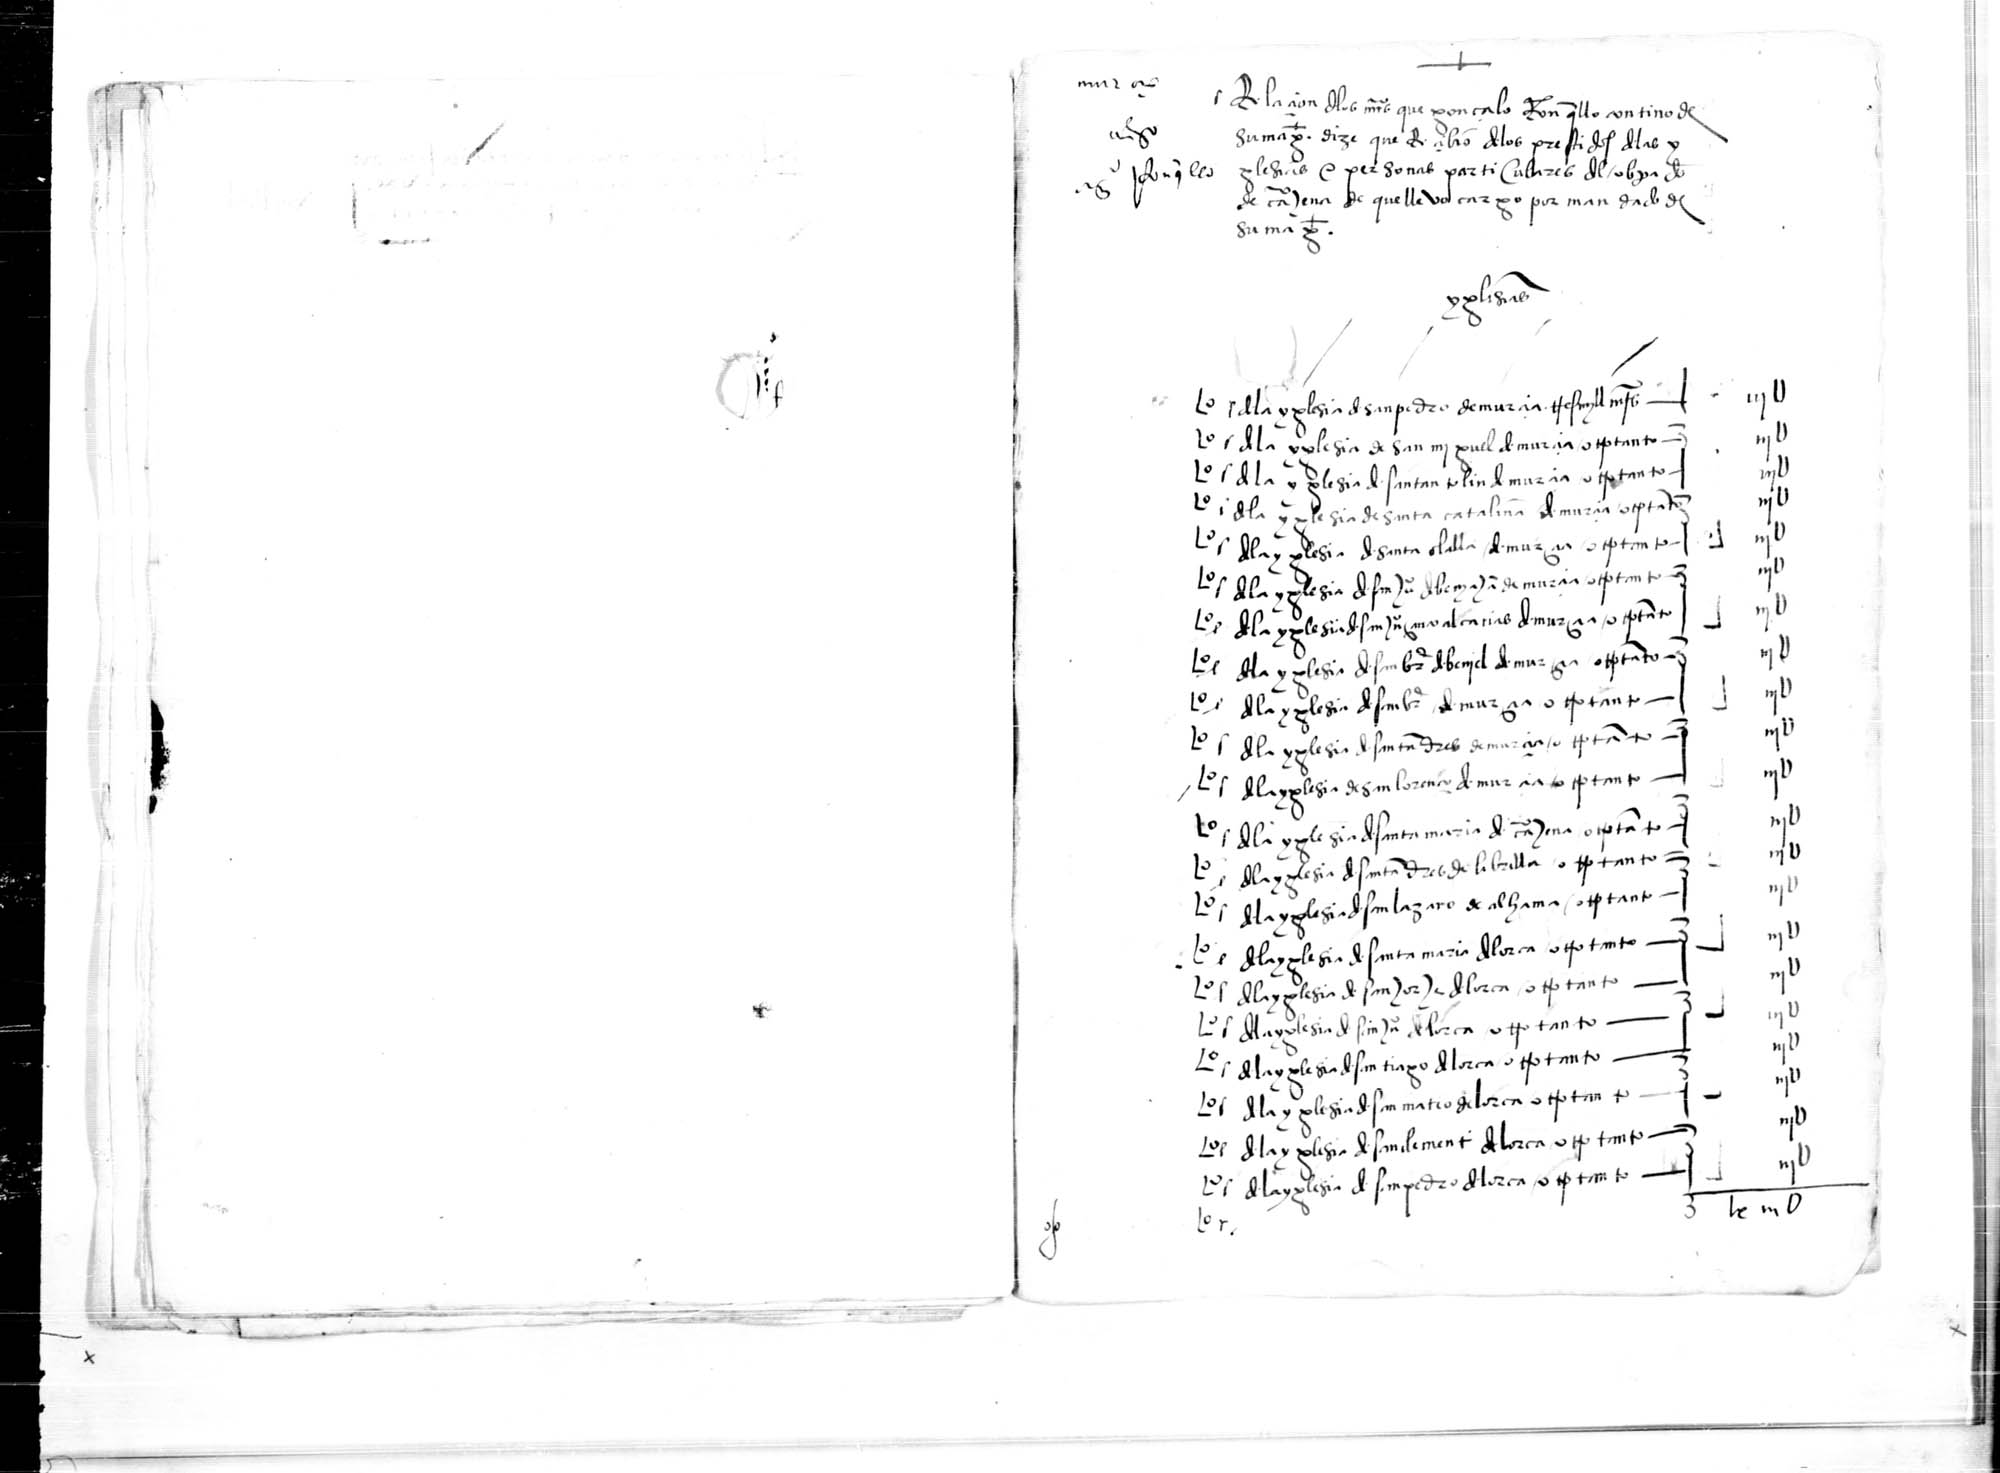 Relación del dinero que Gonzalo Ronquillo dice que recibió de los préstamos de las iglesias y particulares del Obispado de Cartagena.
descripción.